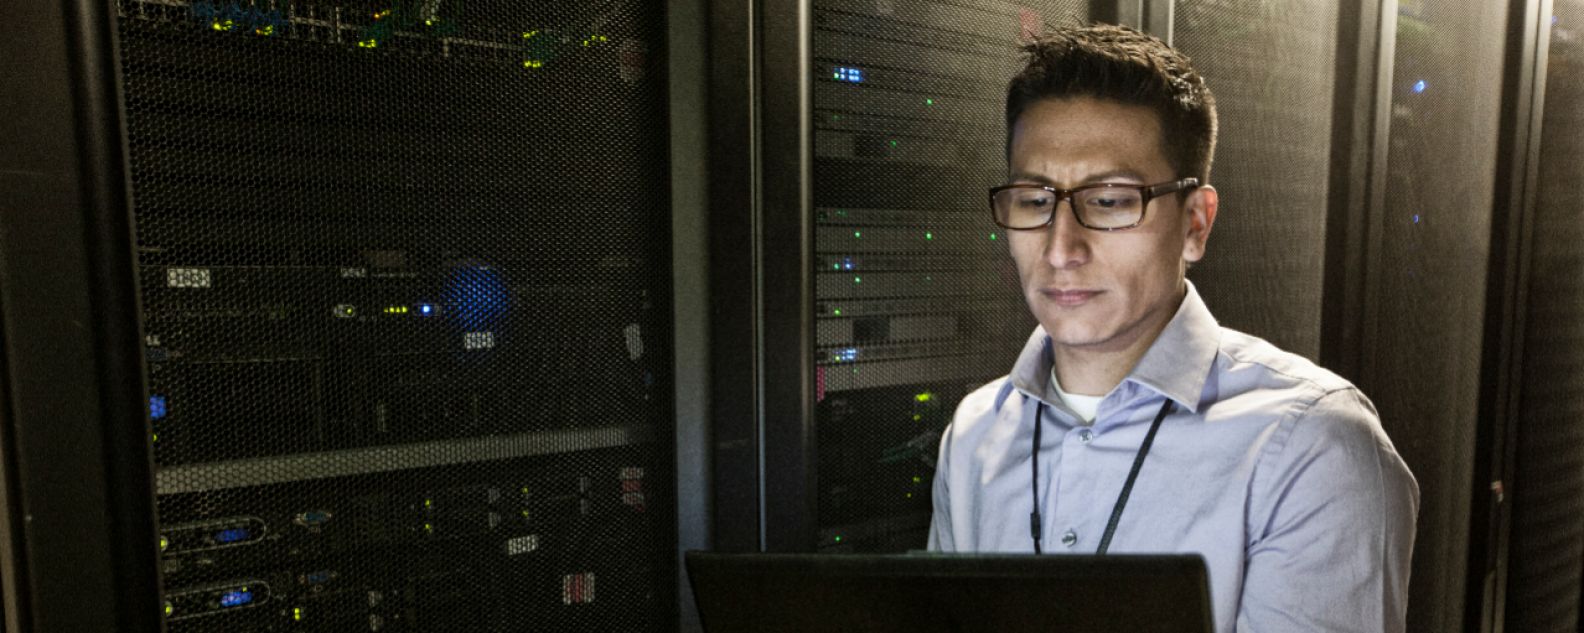 Technicien hispanique effectuant des tests de diagnostic sur des serveurs informatiques